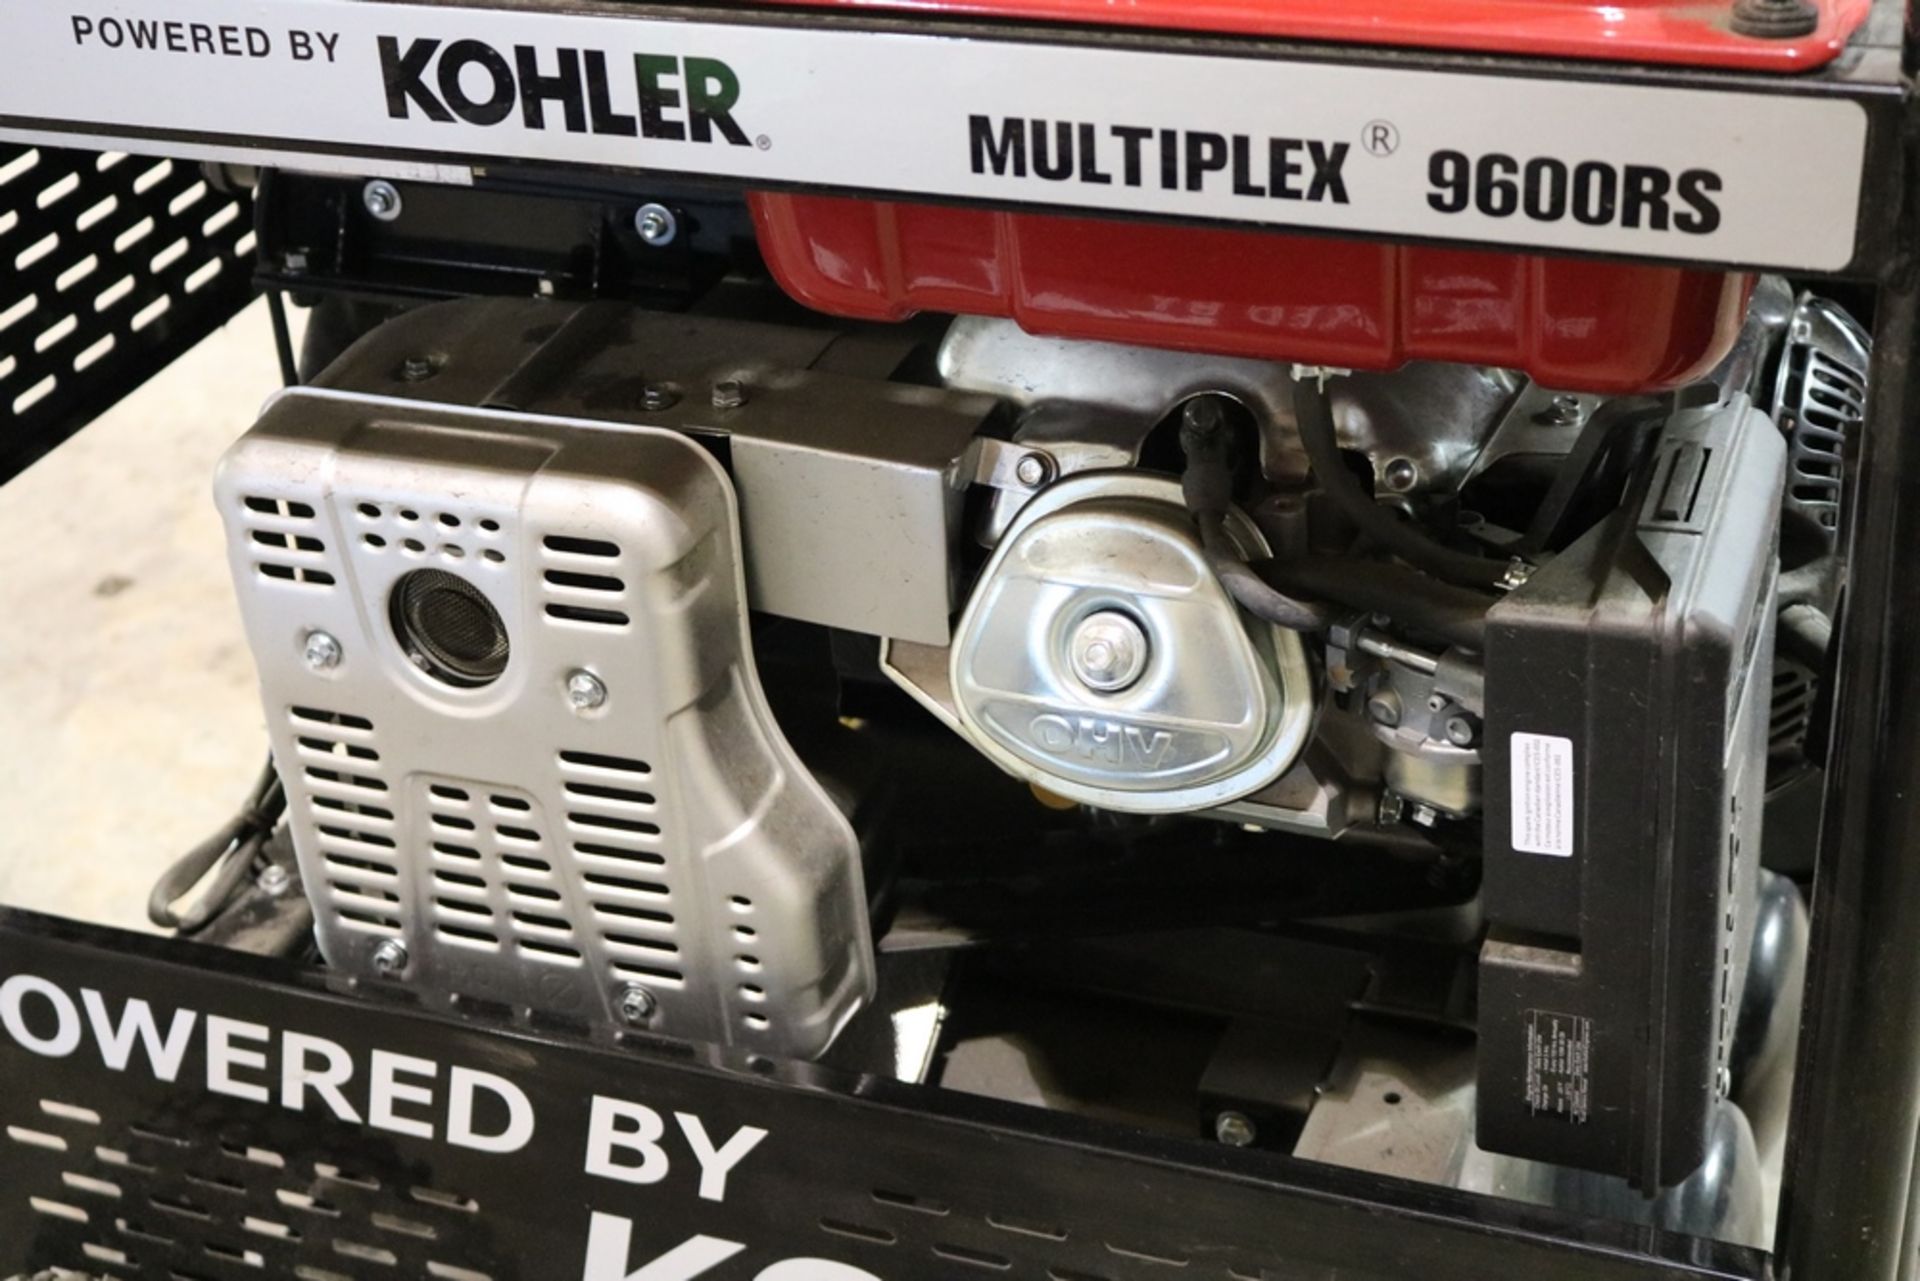 Kohler Multiplex 9600RS Air Compressor, - Image 5 of 16